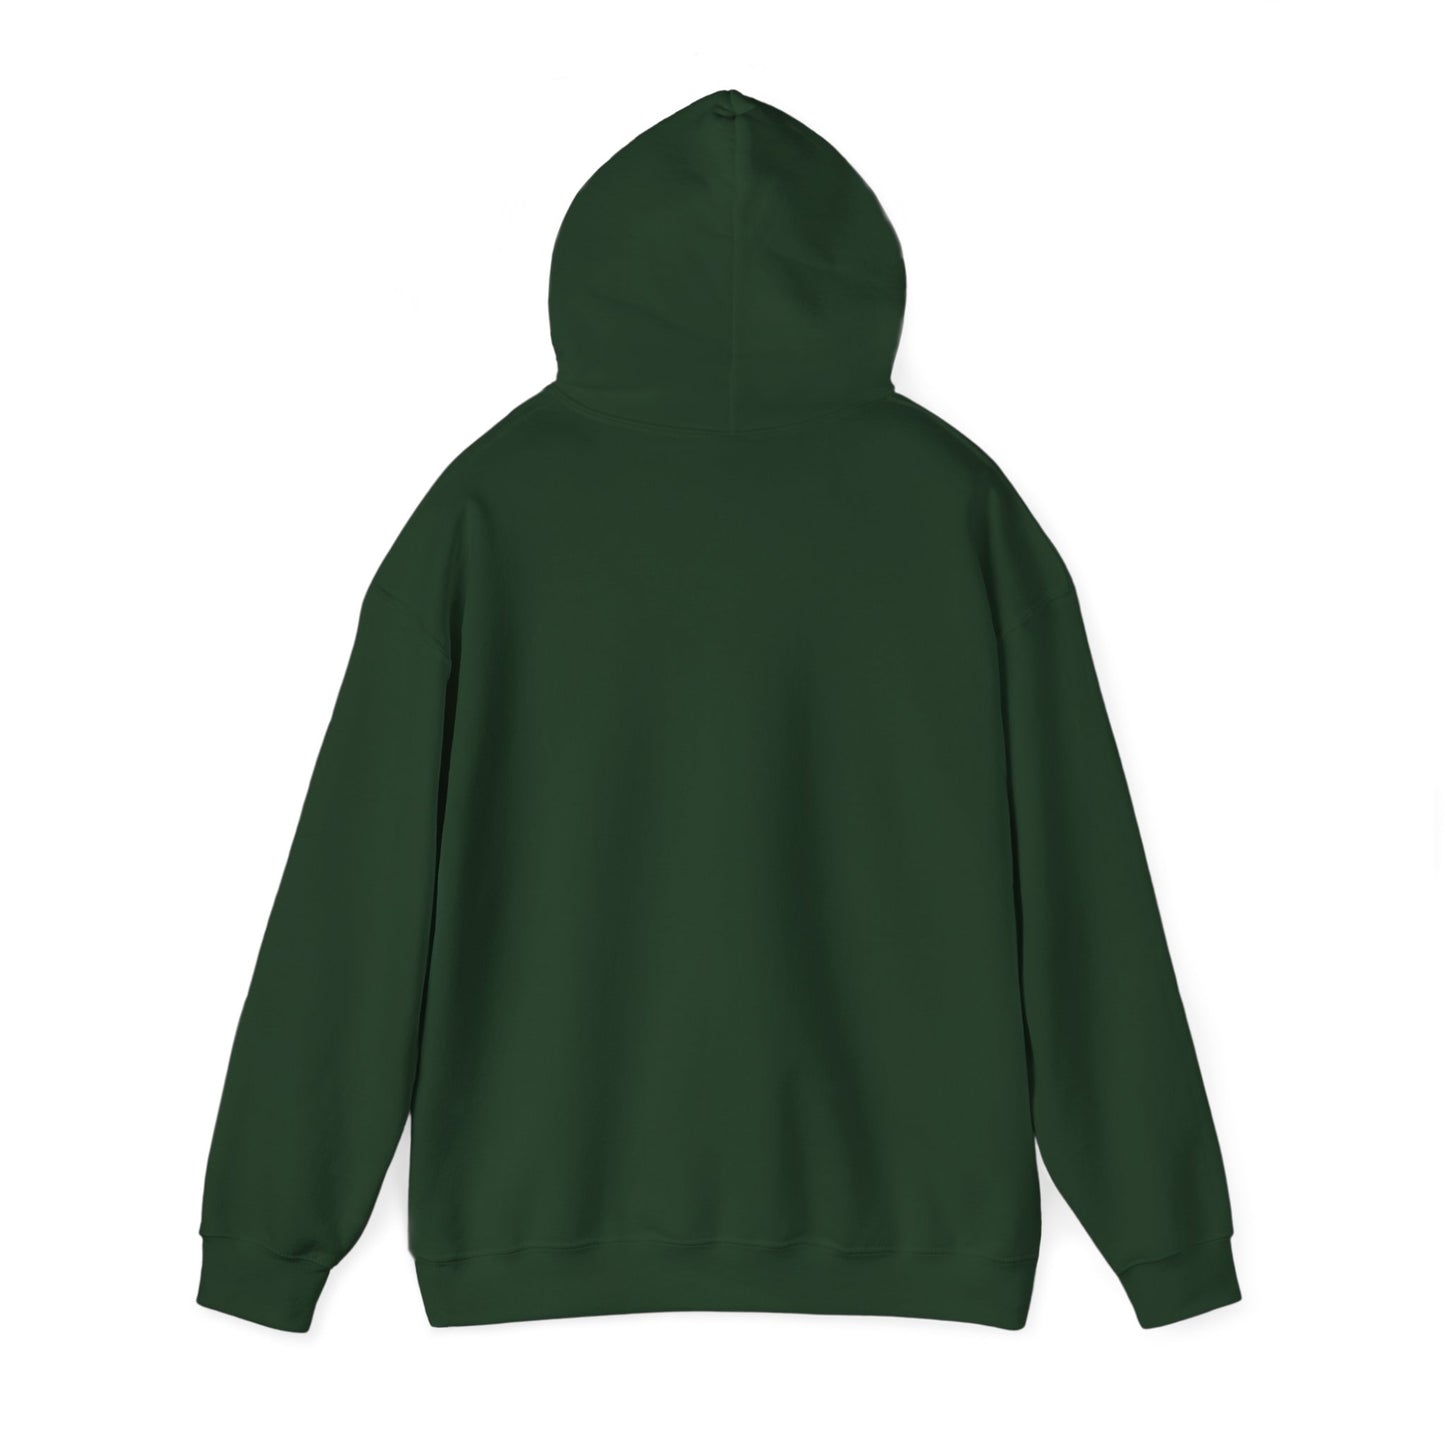 "BUSINESS MODEL" Hoodie! - Unisex Heavy Blend™ Hooded Sweatshirt